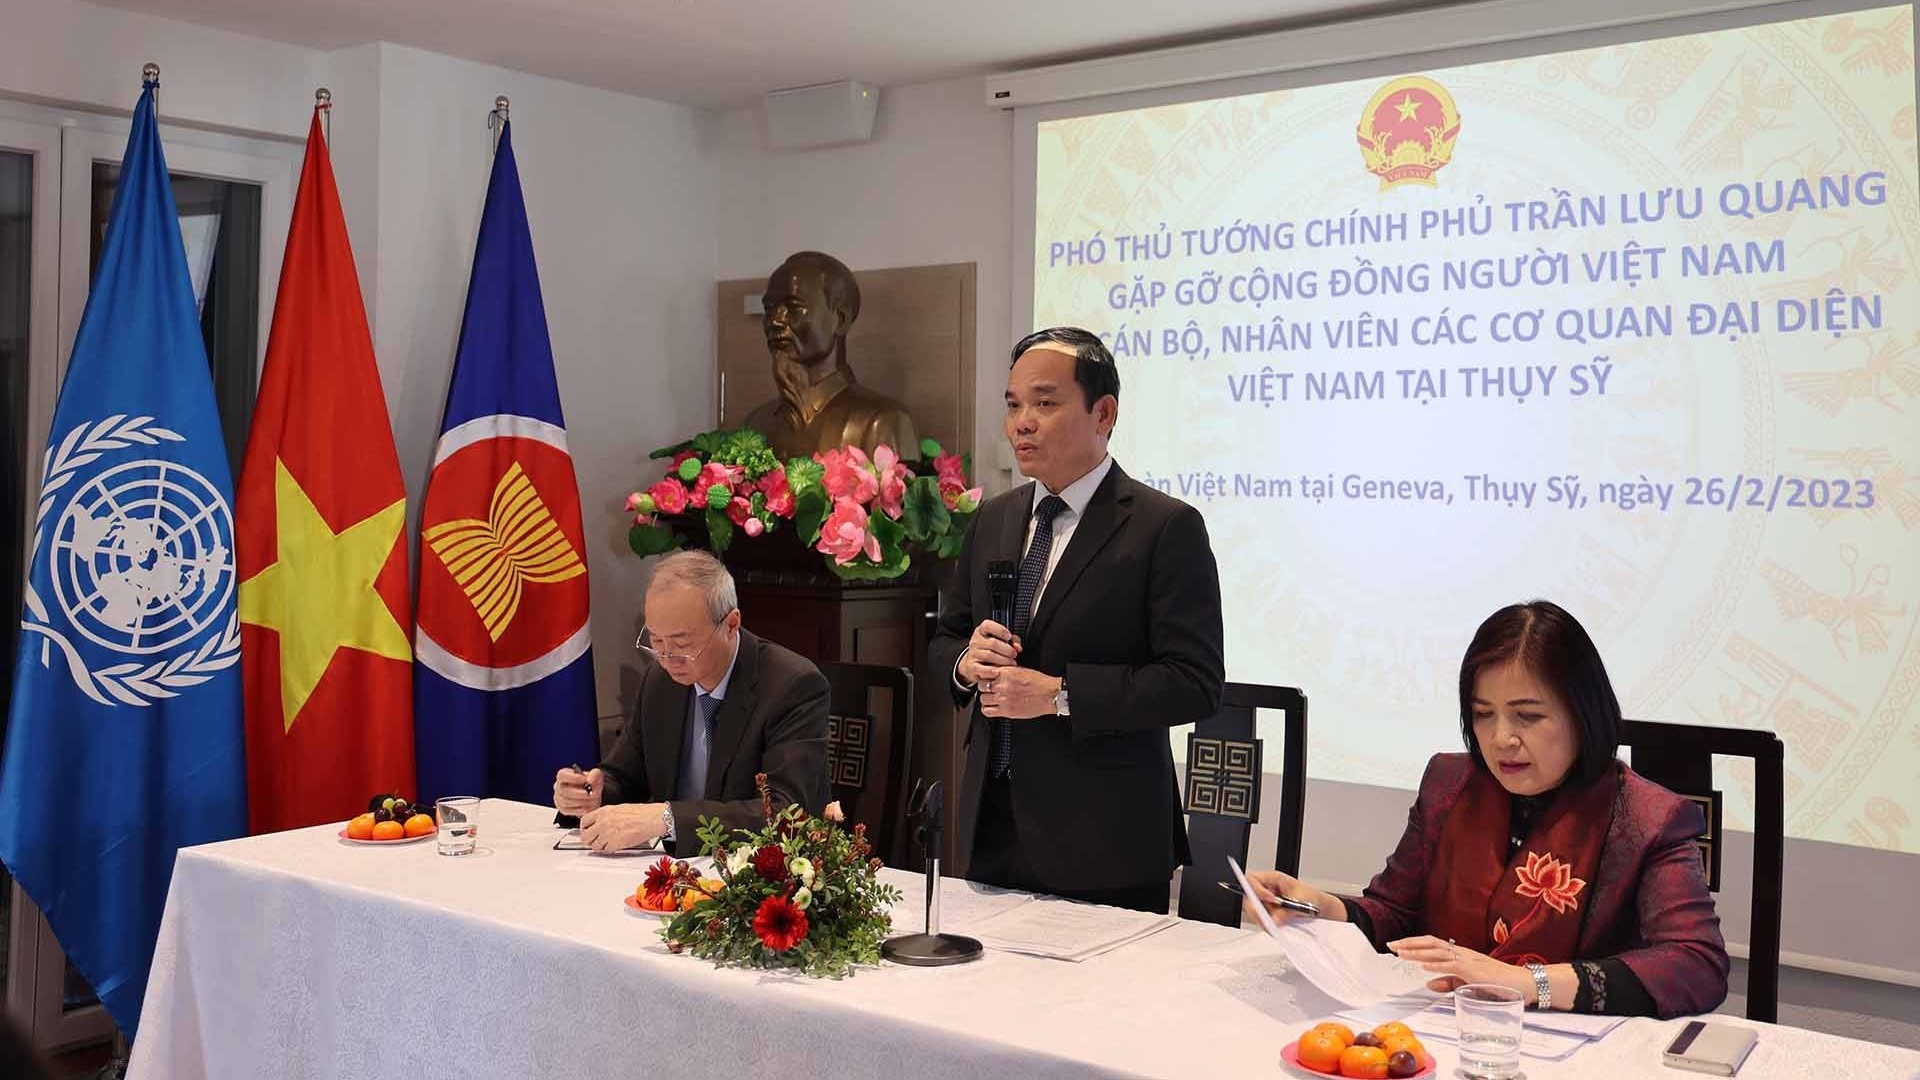 Phó Thủ tướng Chính phủ Trần Lưu Quang gặp mặt cộng đồng người Việt Nam tại Thụy Sỹ